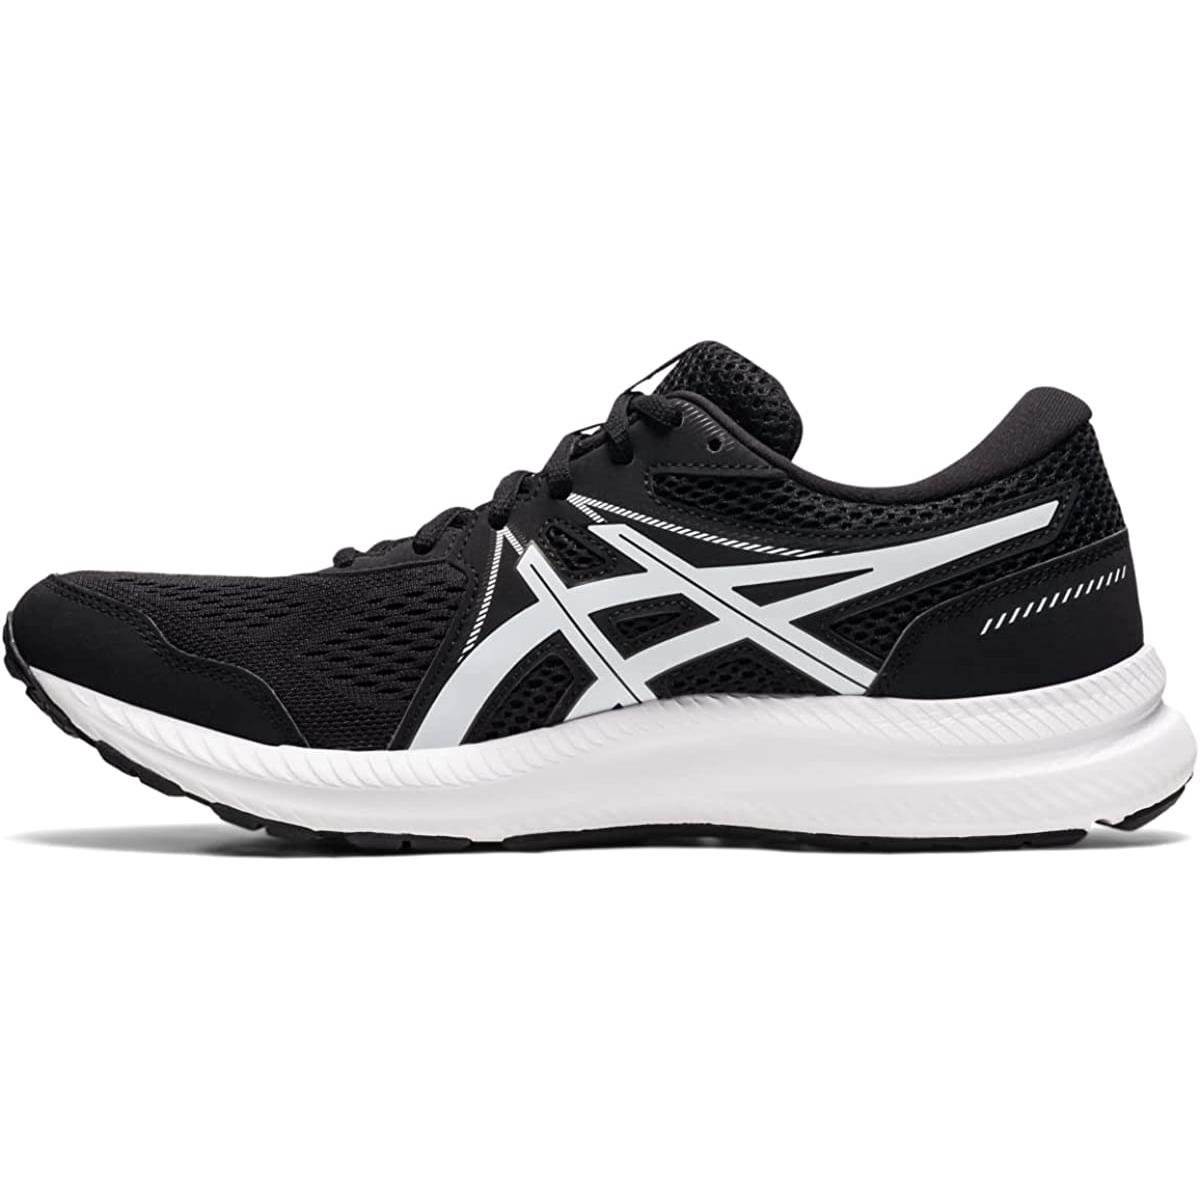 Asics Men`s Gel-contend 7 Running Shoe Black/White